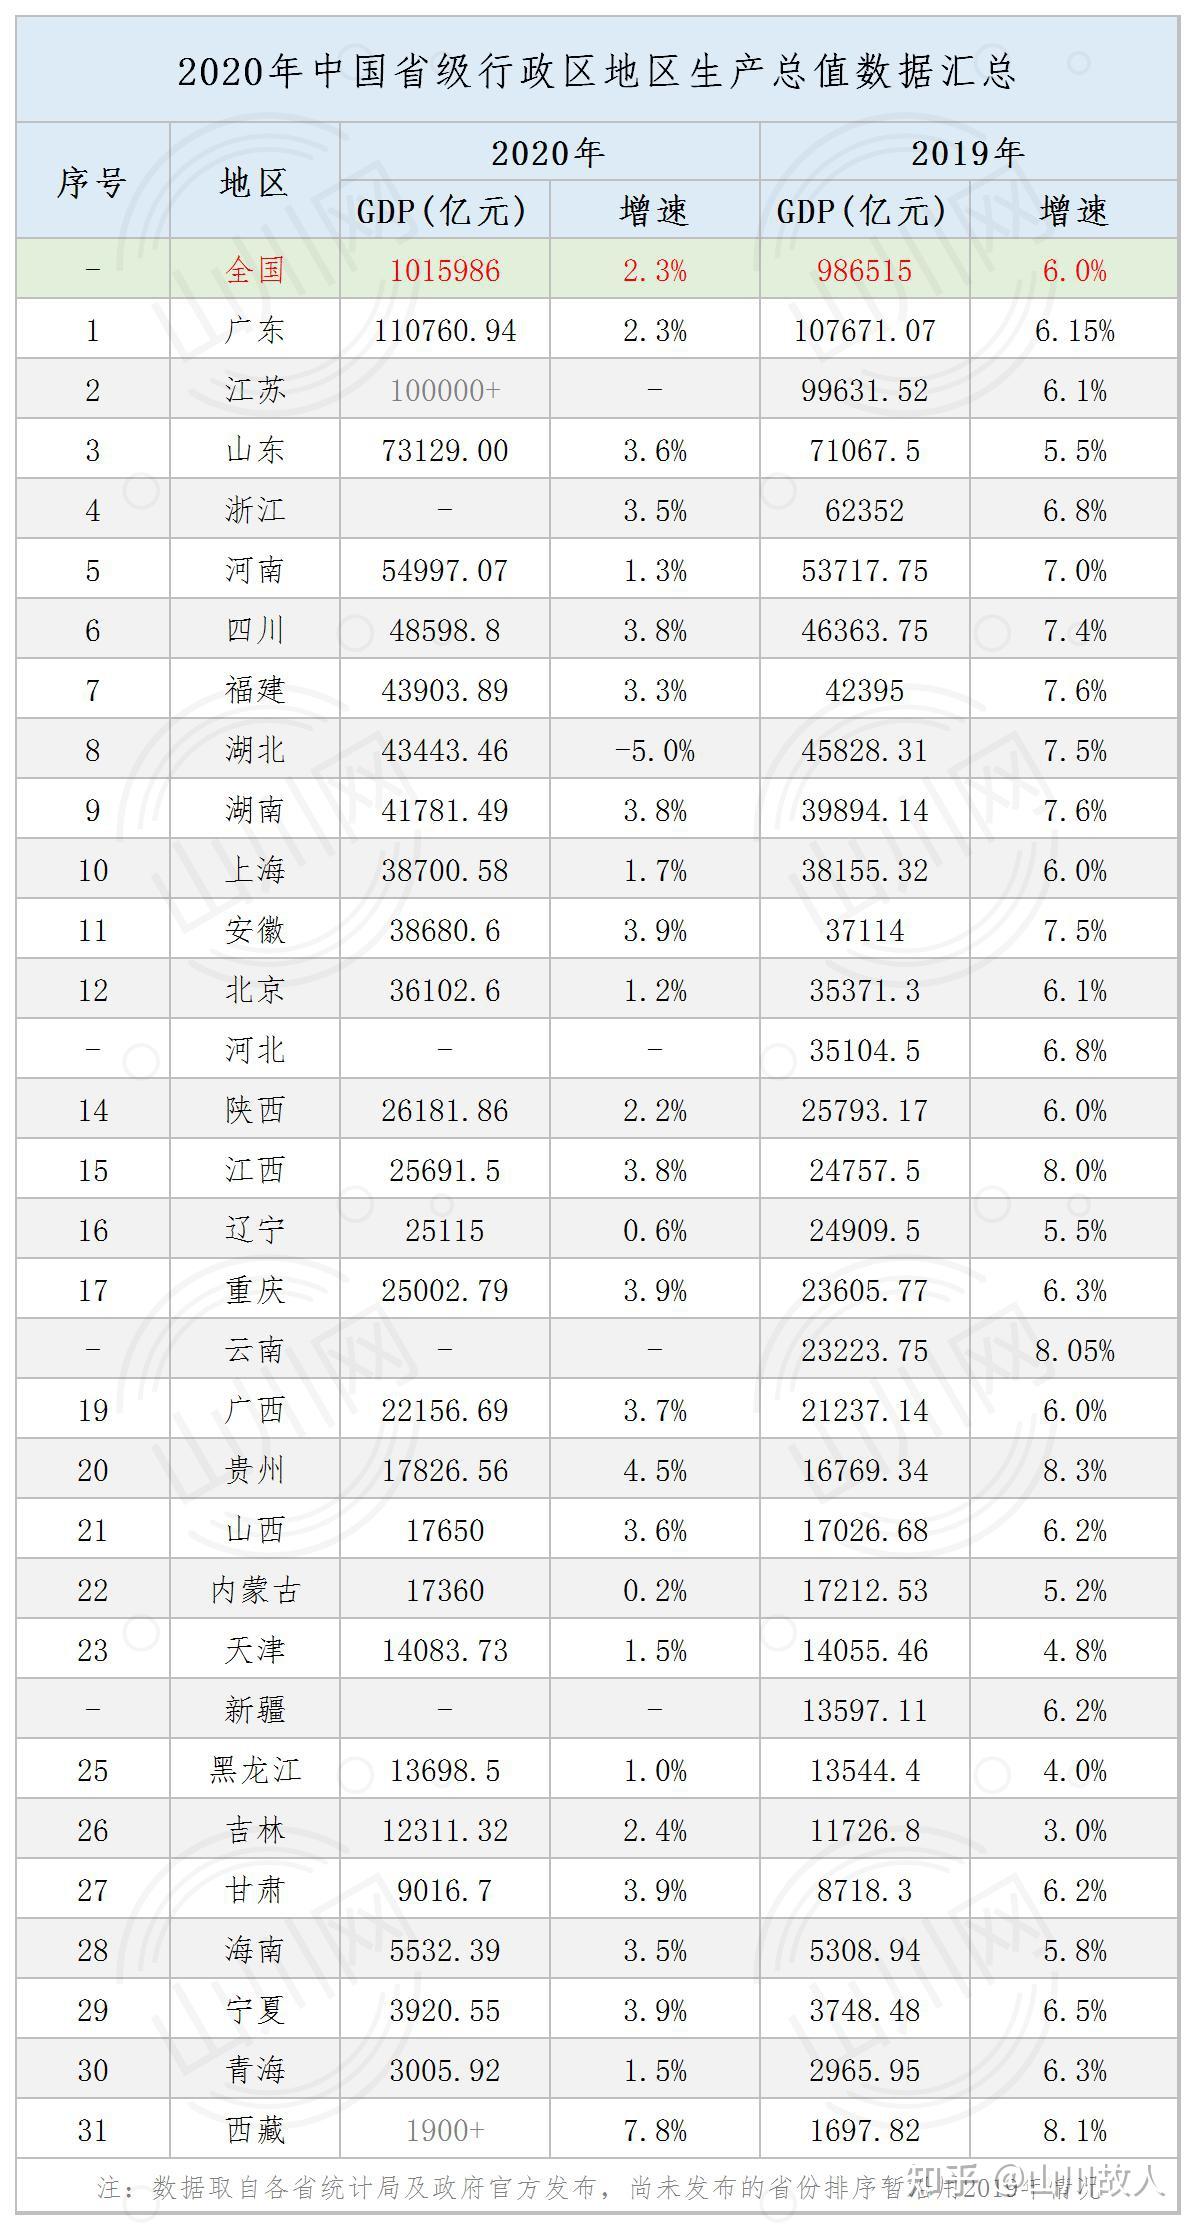 持续更新丨2020年中国省区gdp排名简析:仅剩苏浙冀滇新藏待公布